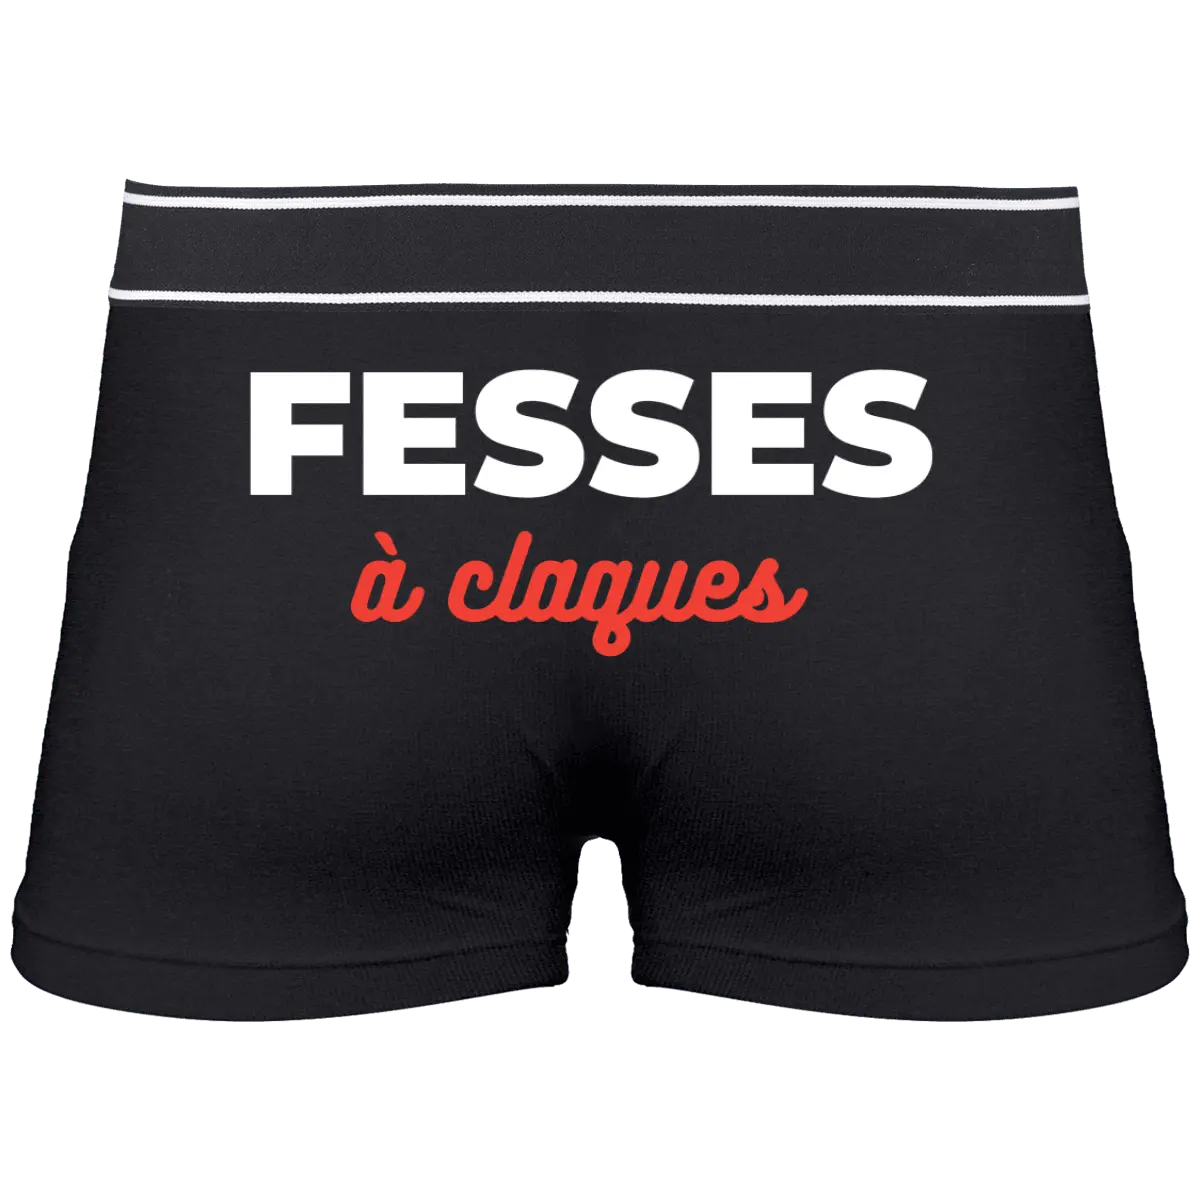 Caleçon "Fesses à claques" - French Humour